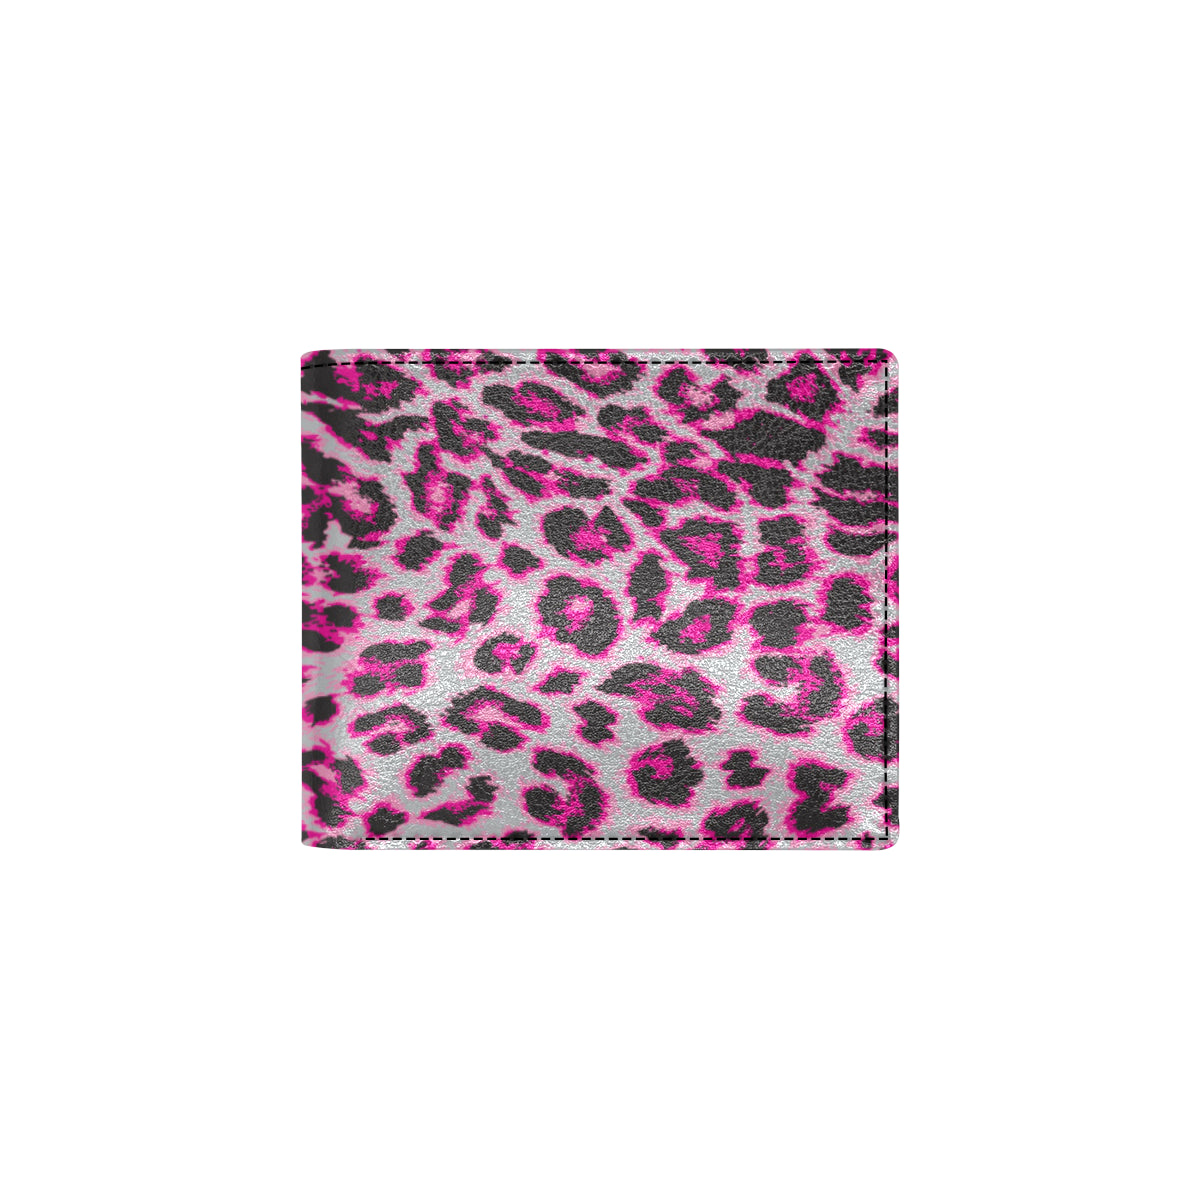 Leopard Pattern Print Design 02 Men's ID Card Wallet